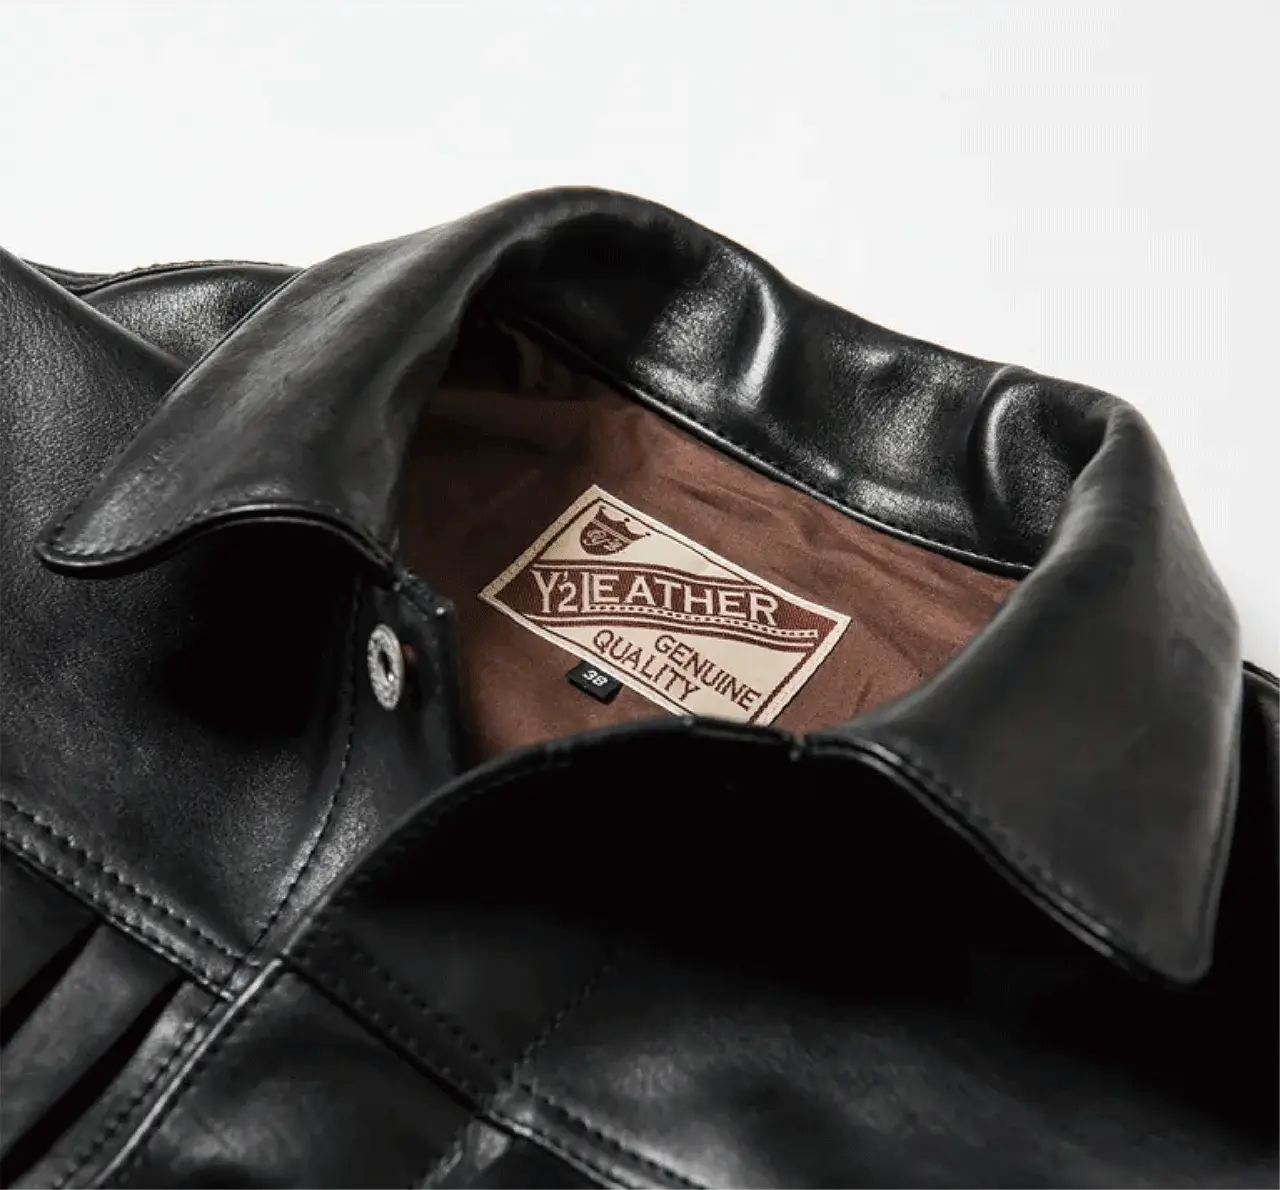 ECO HORSE 1st Type JACKET leather jacket brand